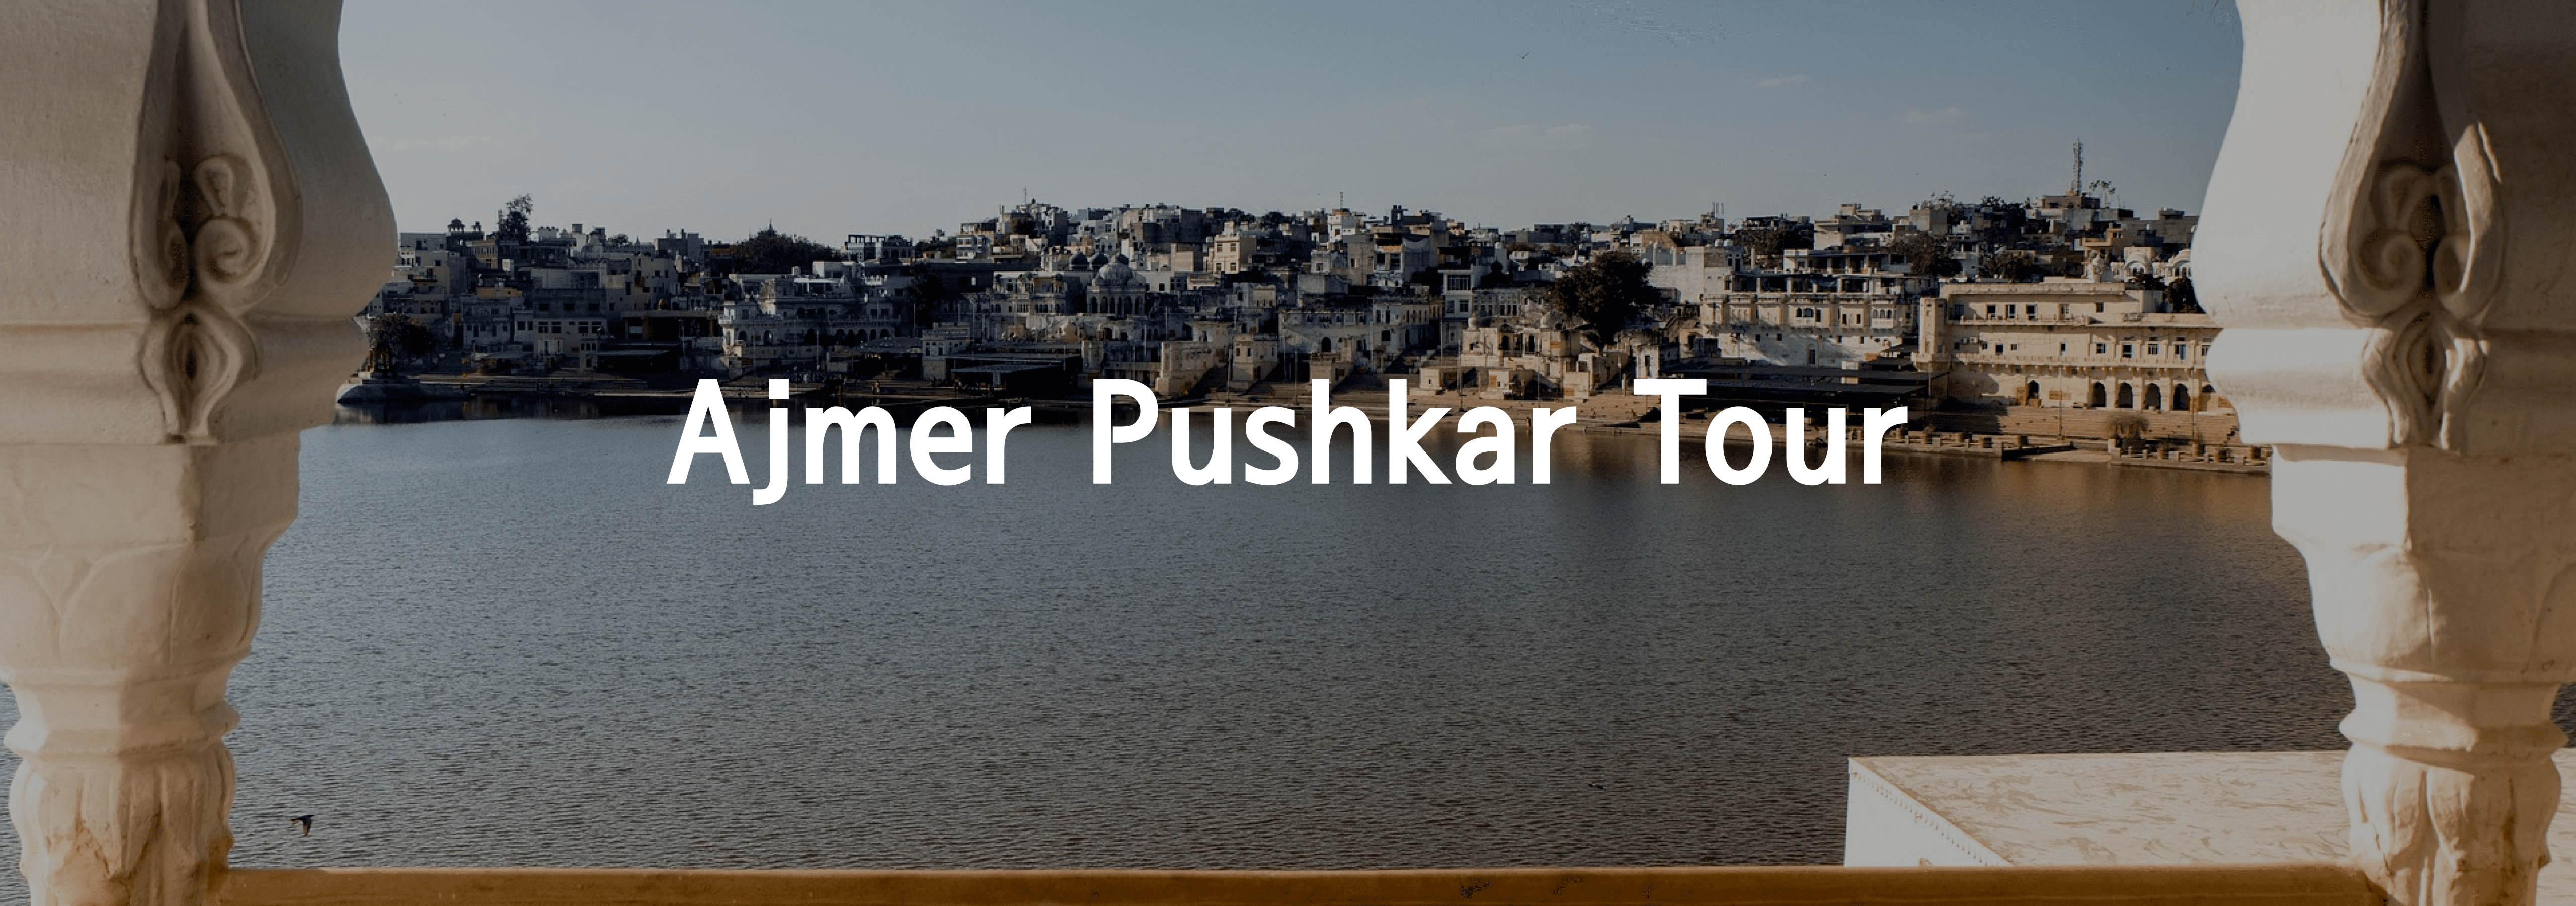 ajmer-pushkar-tour